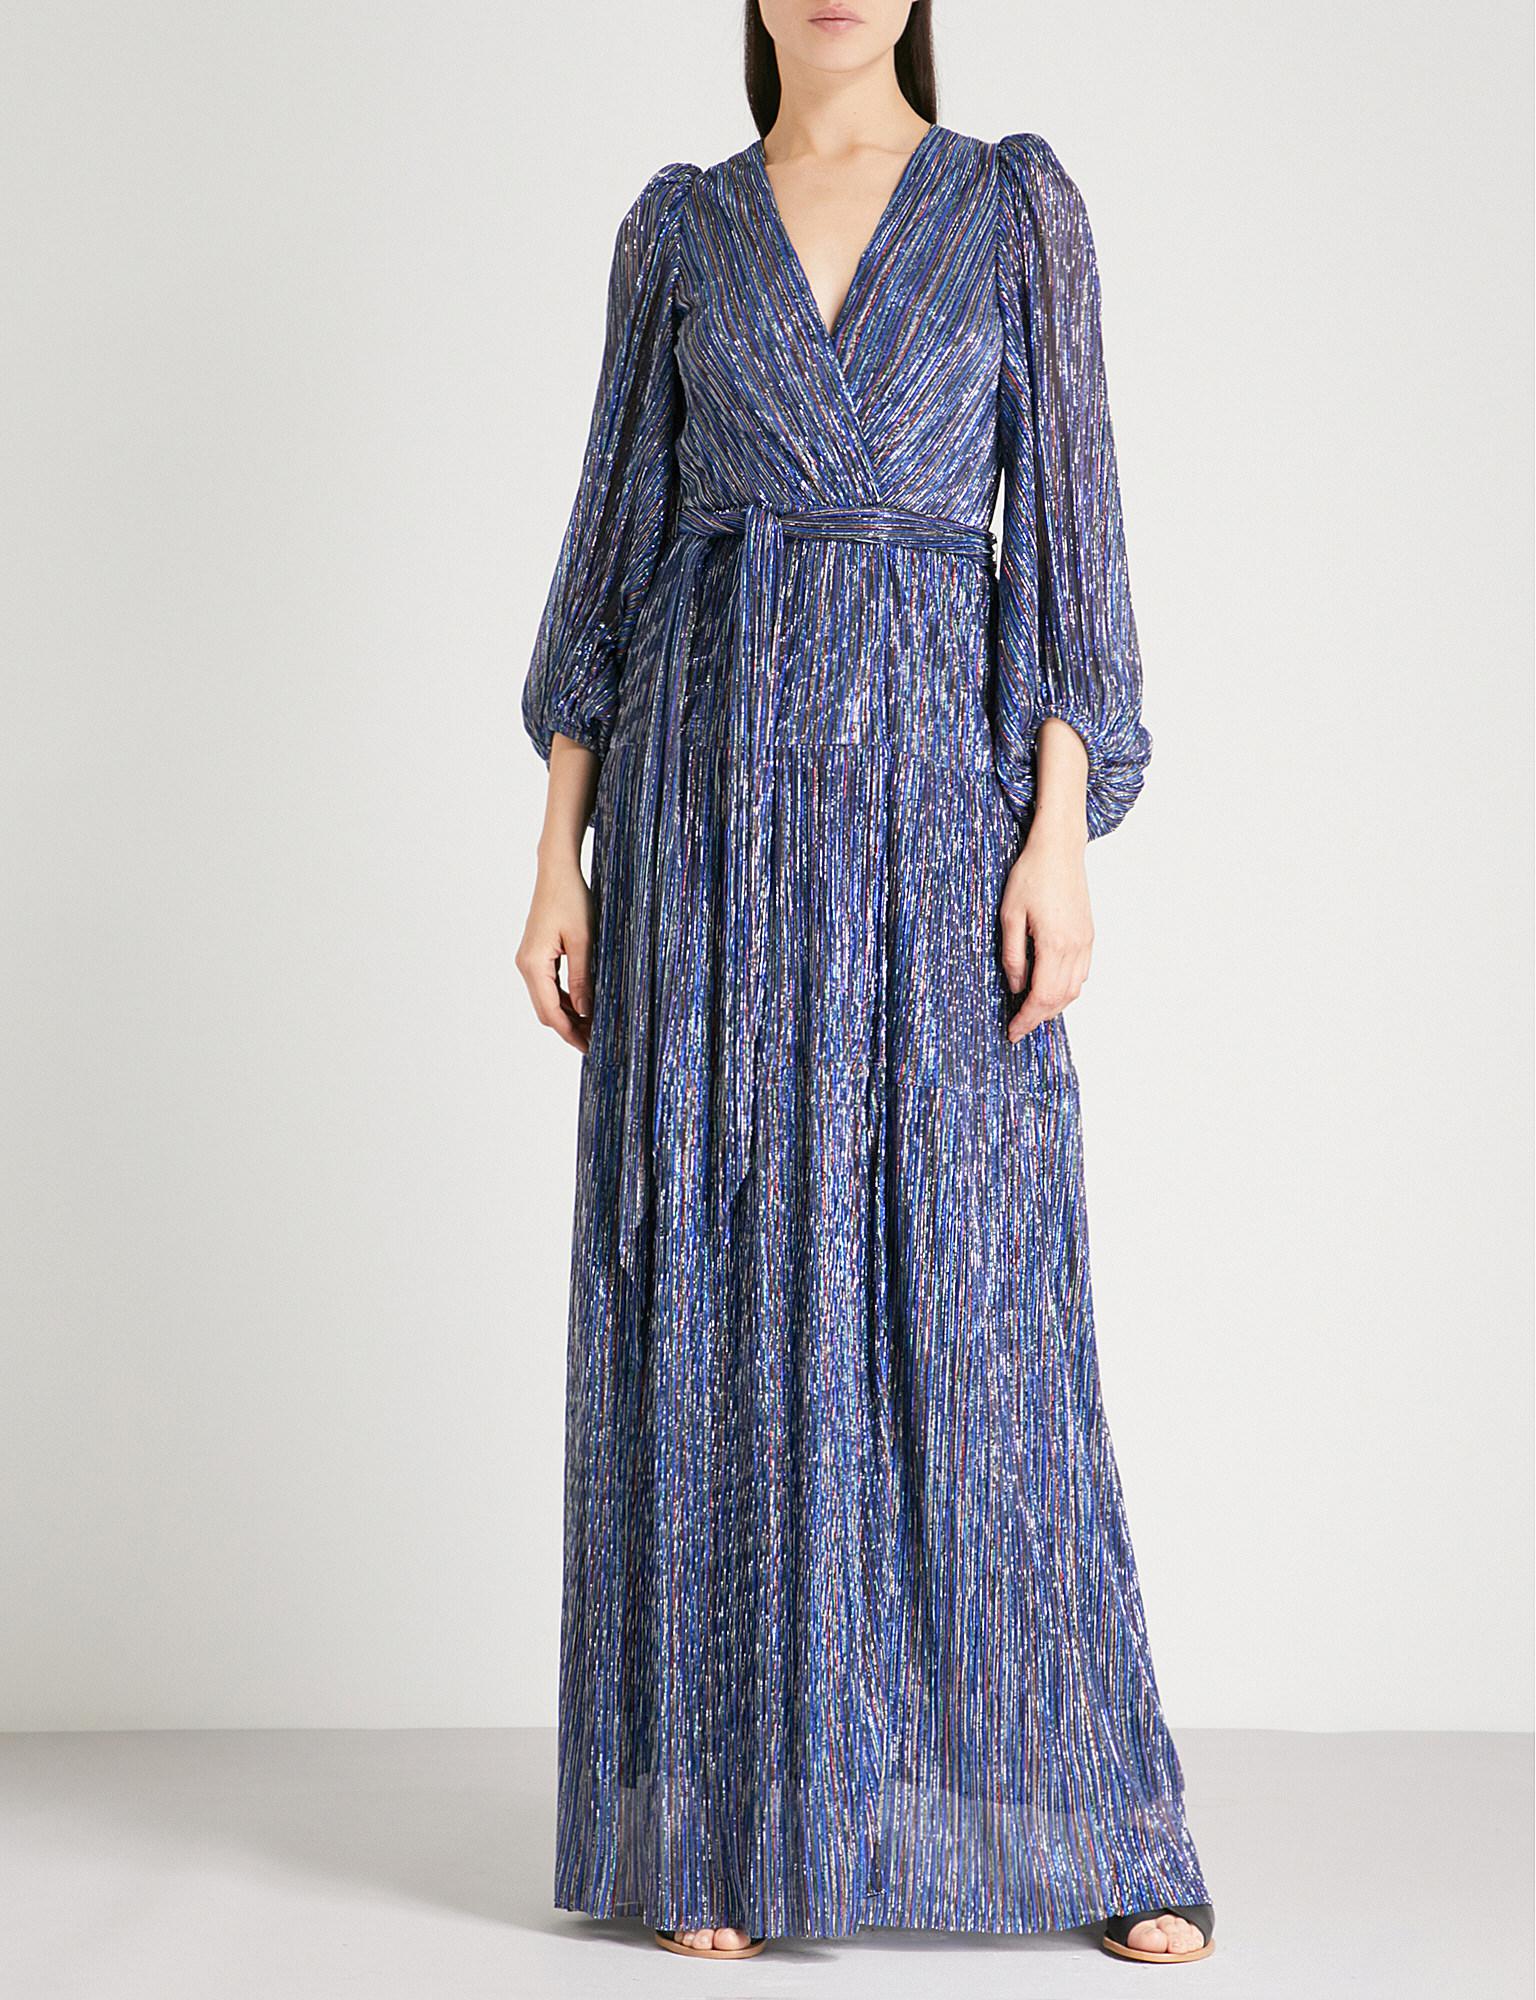 Ba&sh Maddie Cutout Metallic Woven Maxi Dress in Blue | Lyst